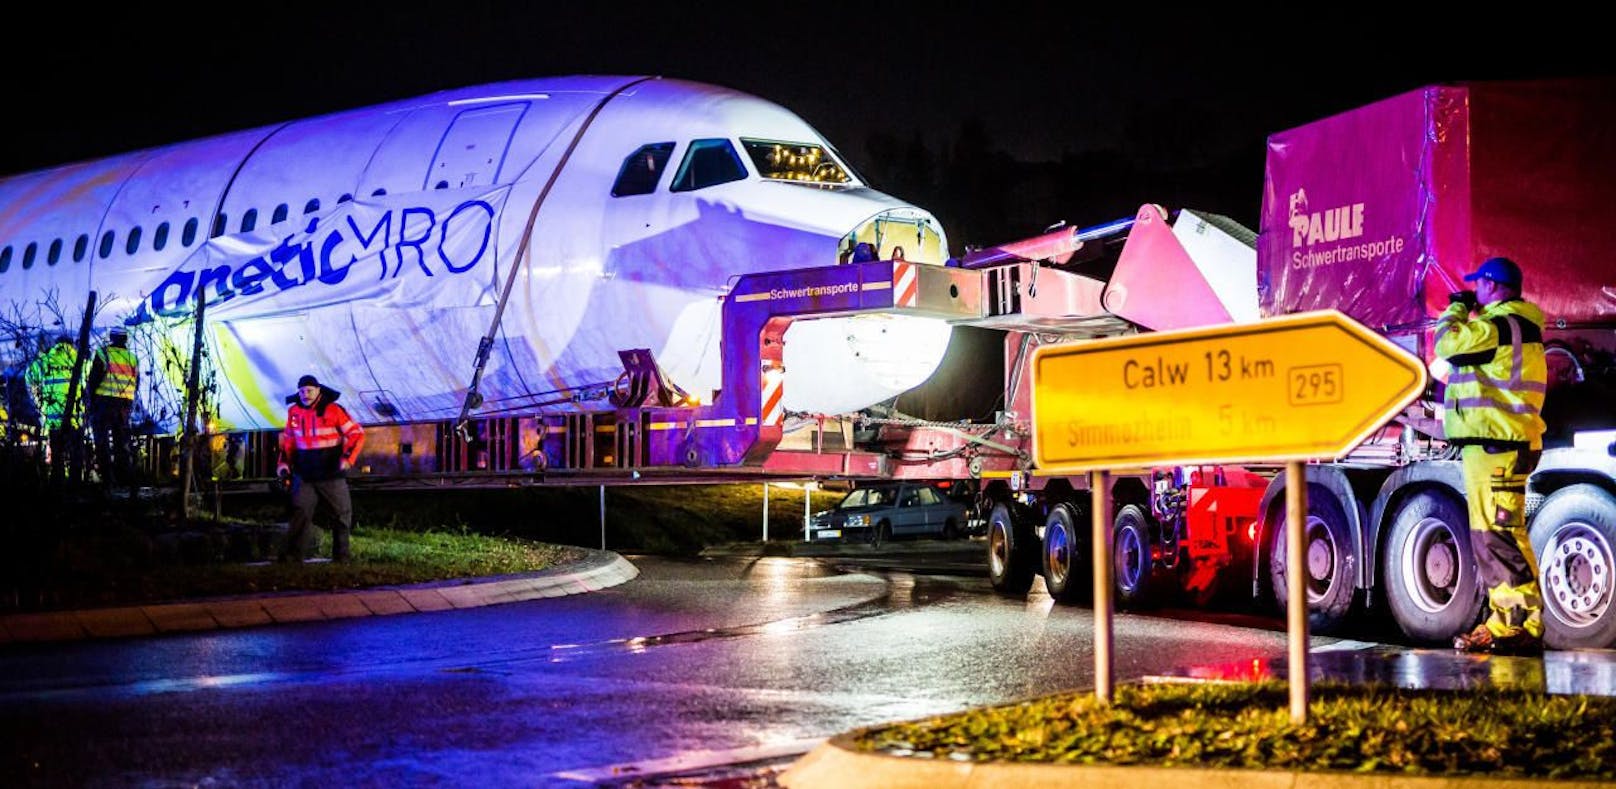 Airbus A320 bleibt in Kreisverkehr liegen